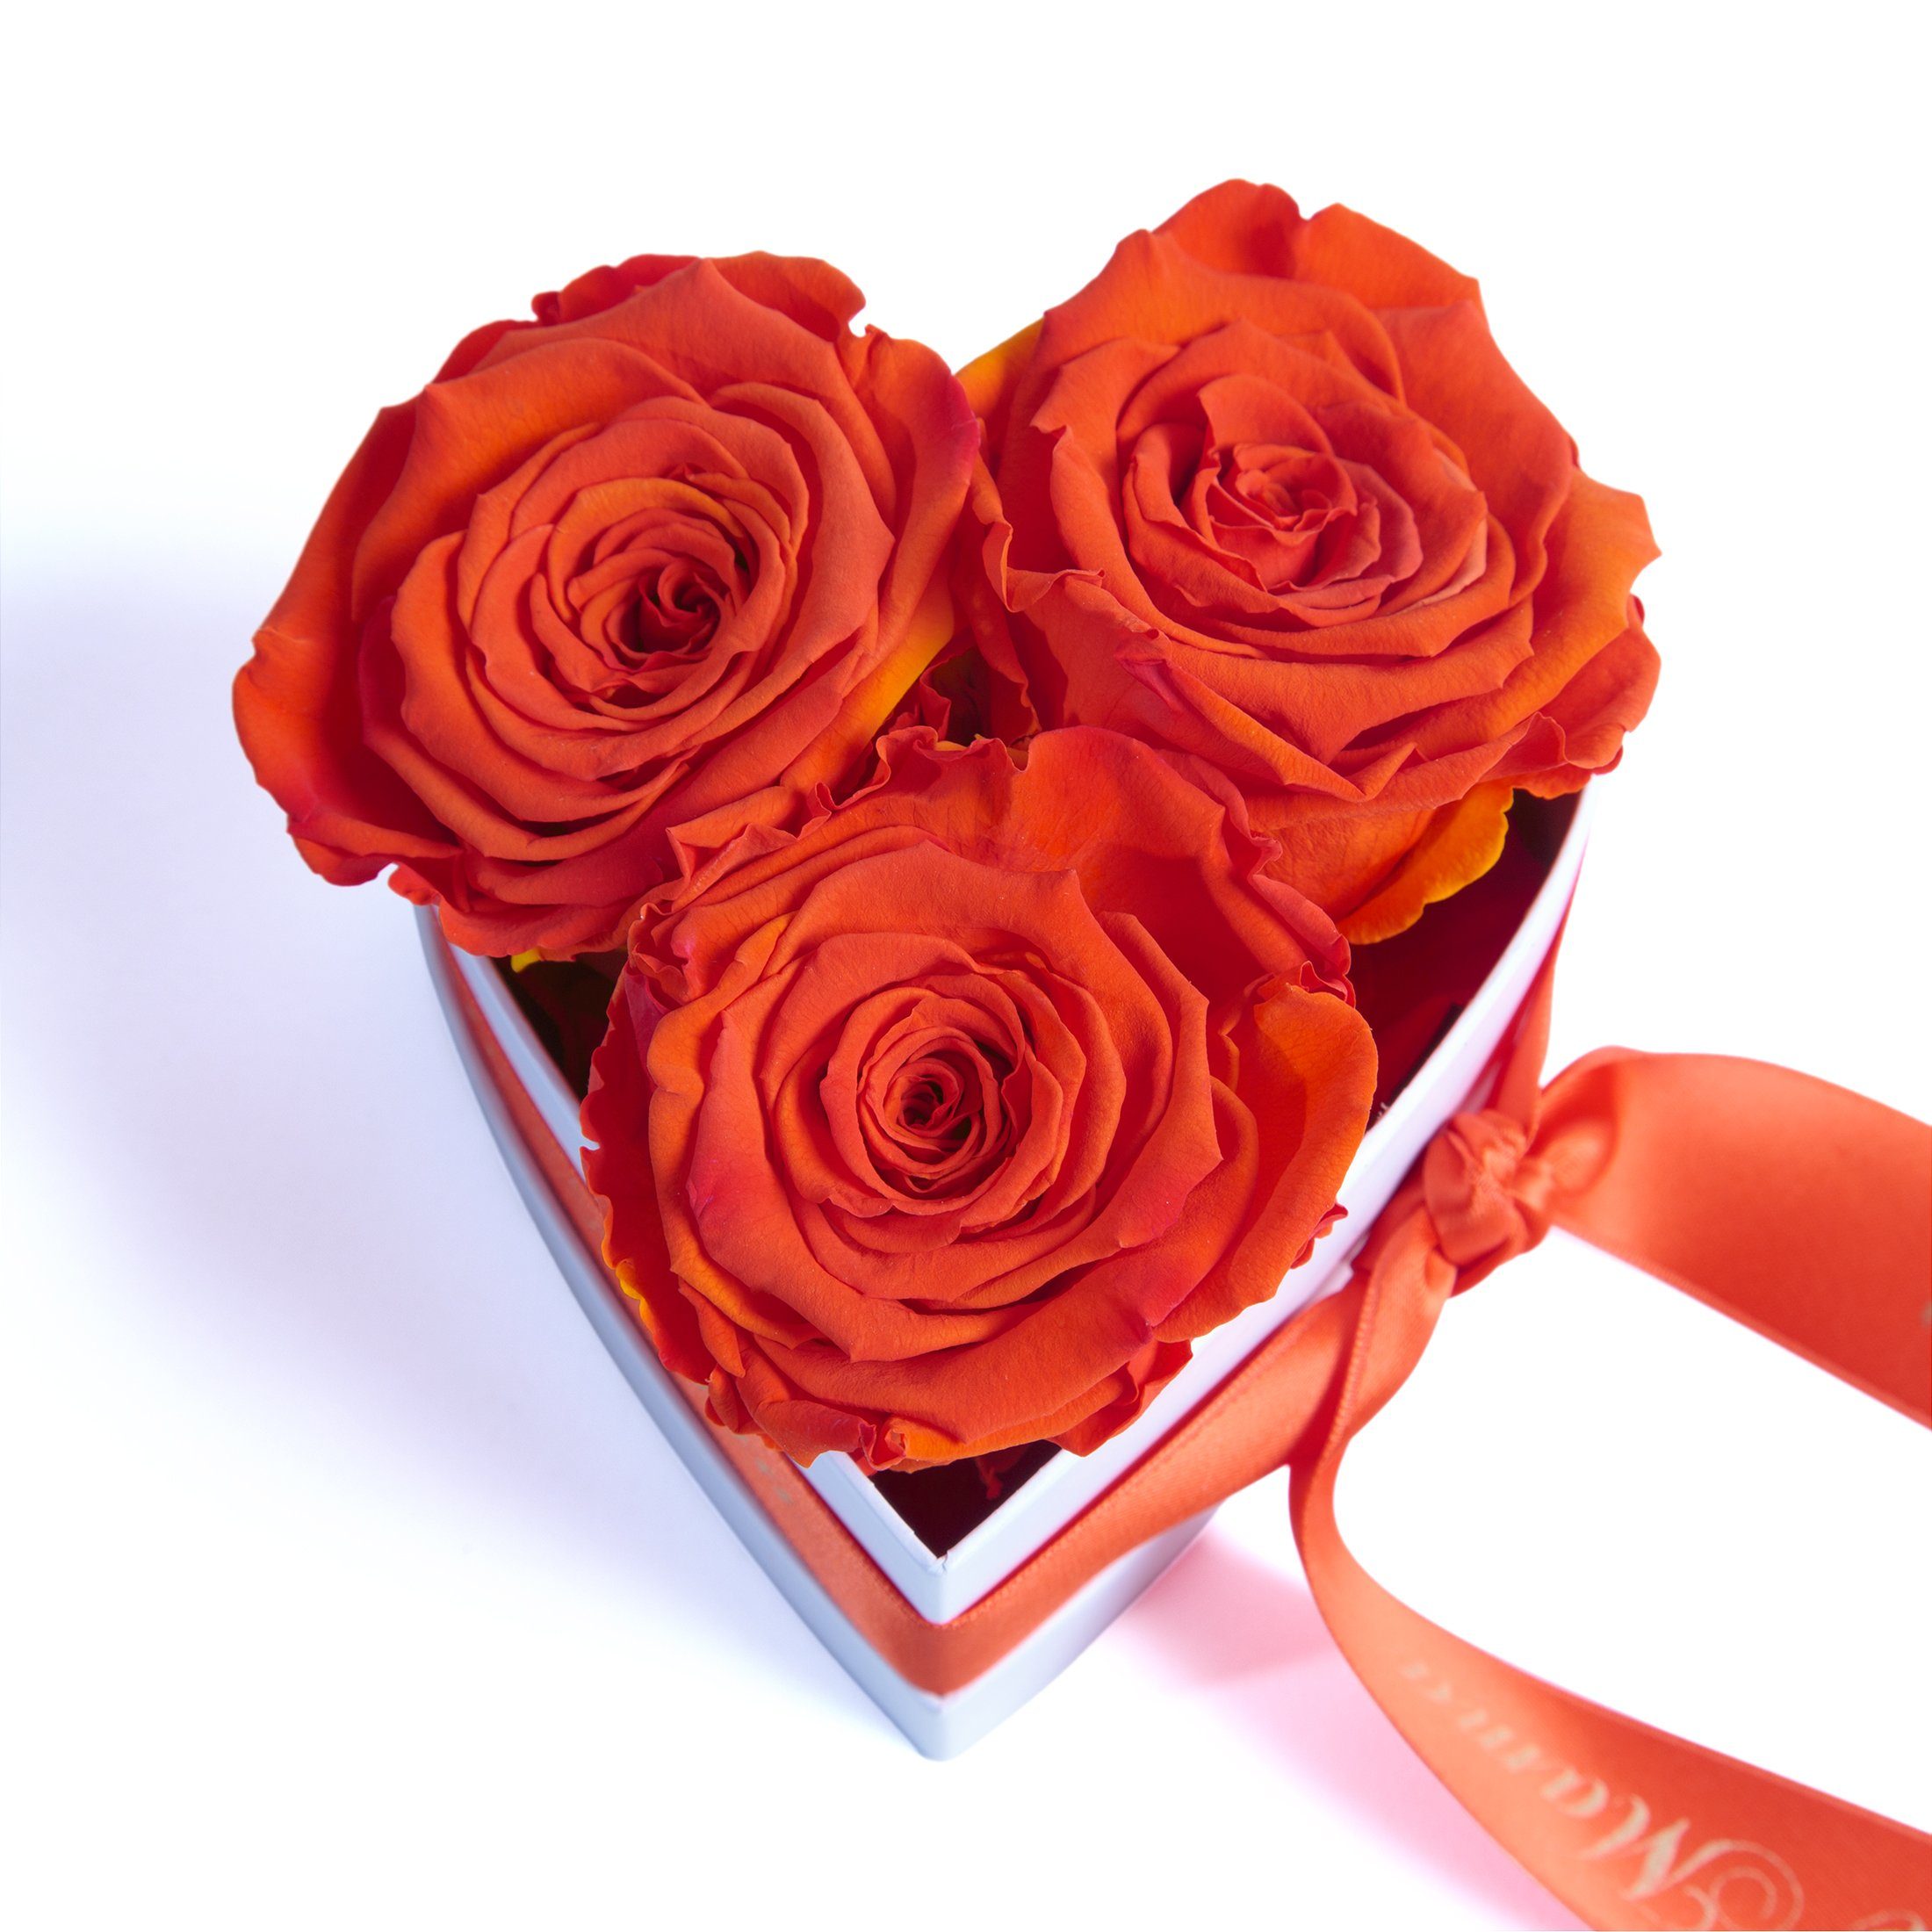 Rosenbox Kunstblume Jahre Beste Mama Orange haltbar die der Blumen echte 3 Rosen Infinity Heidelberg, 10 cm, Rose, Welt 3 SCHULZ für Herz ROSEMARIE Höhe Geschenk